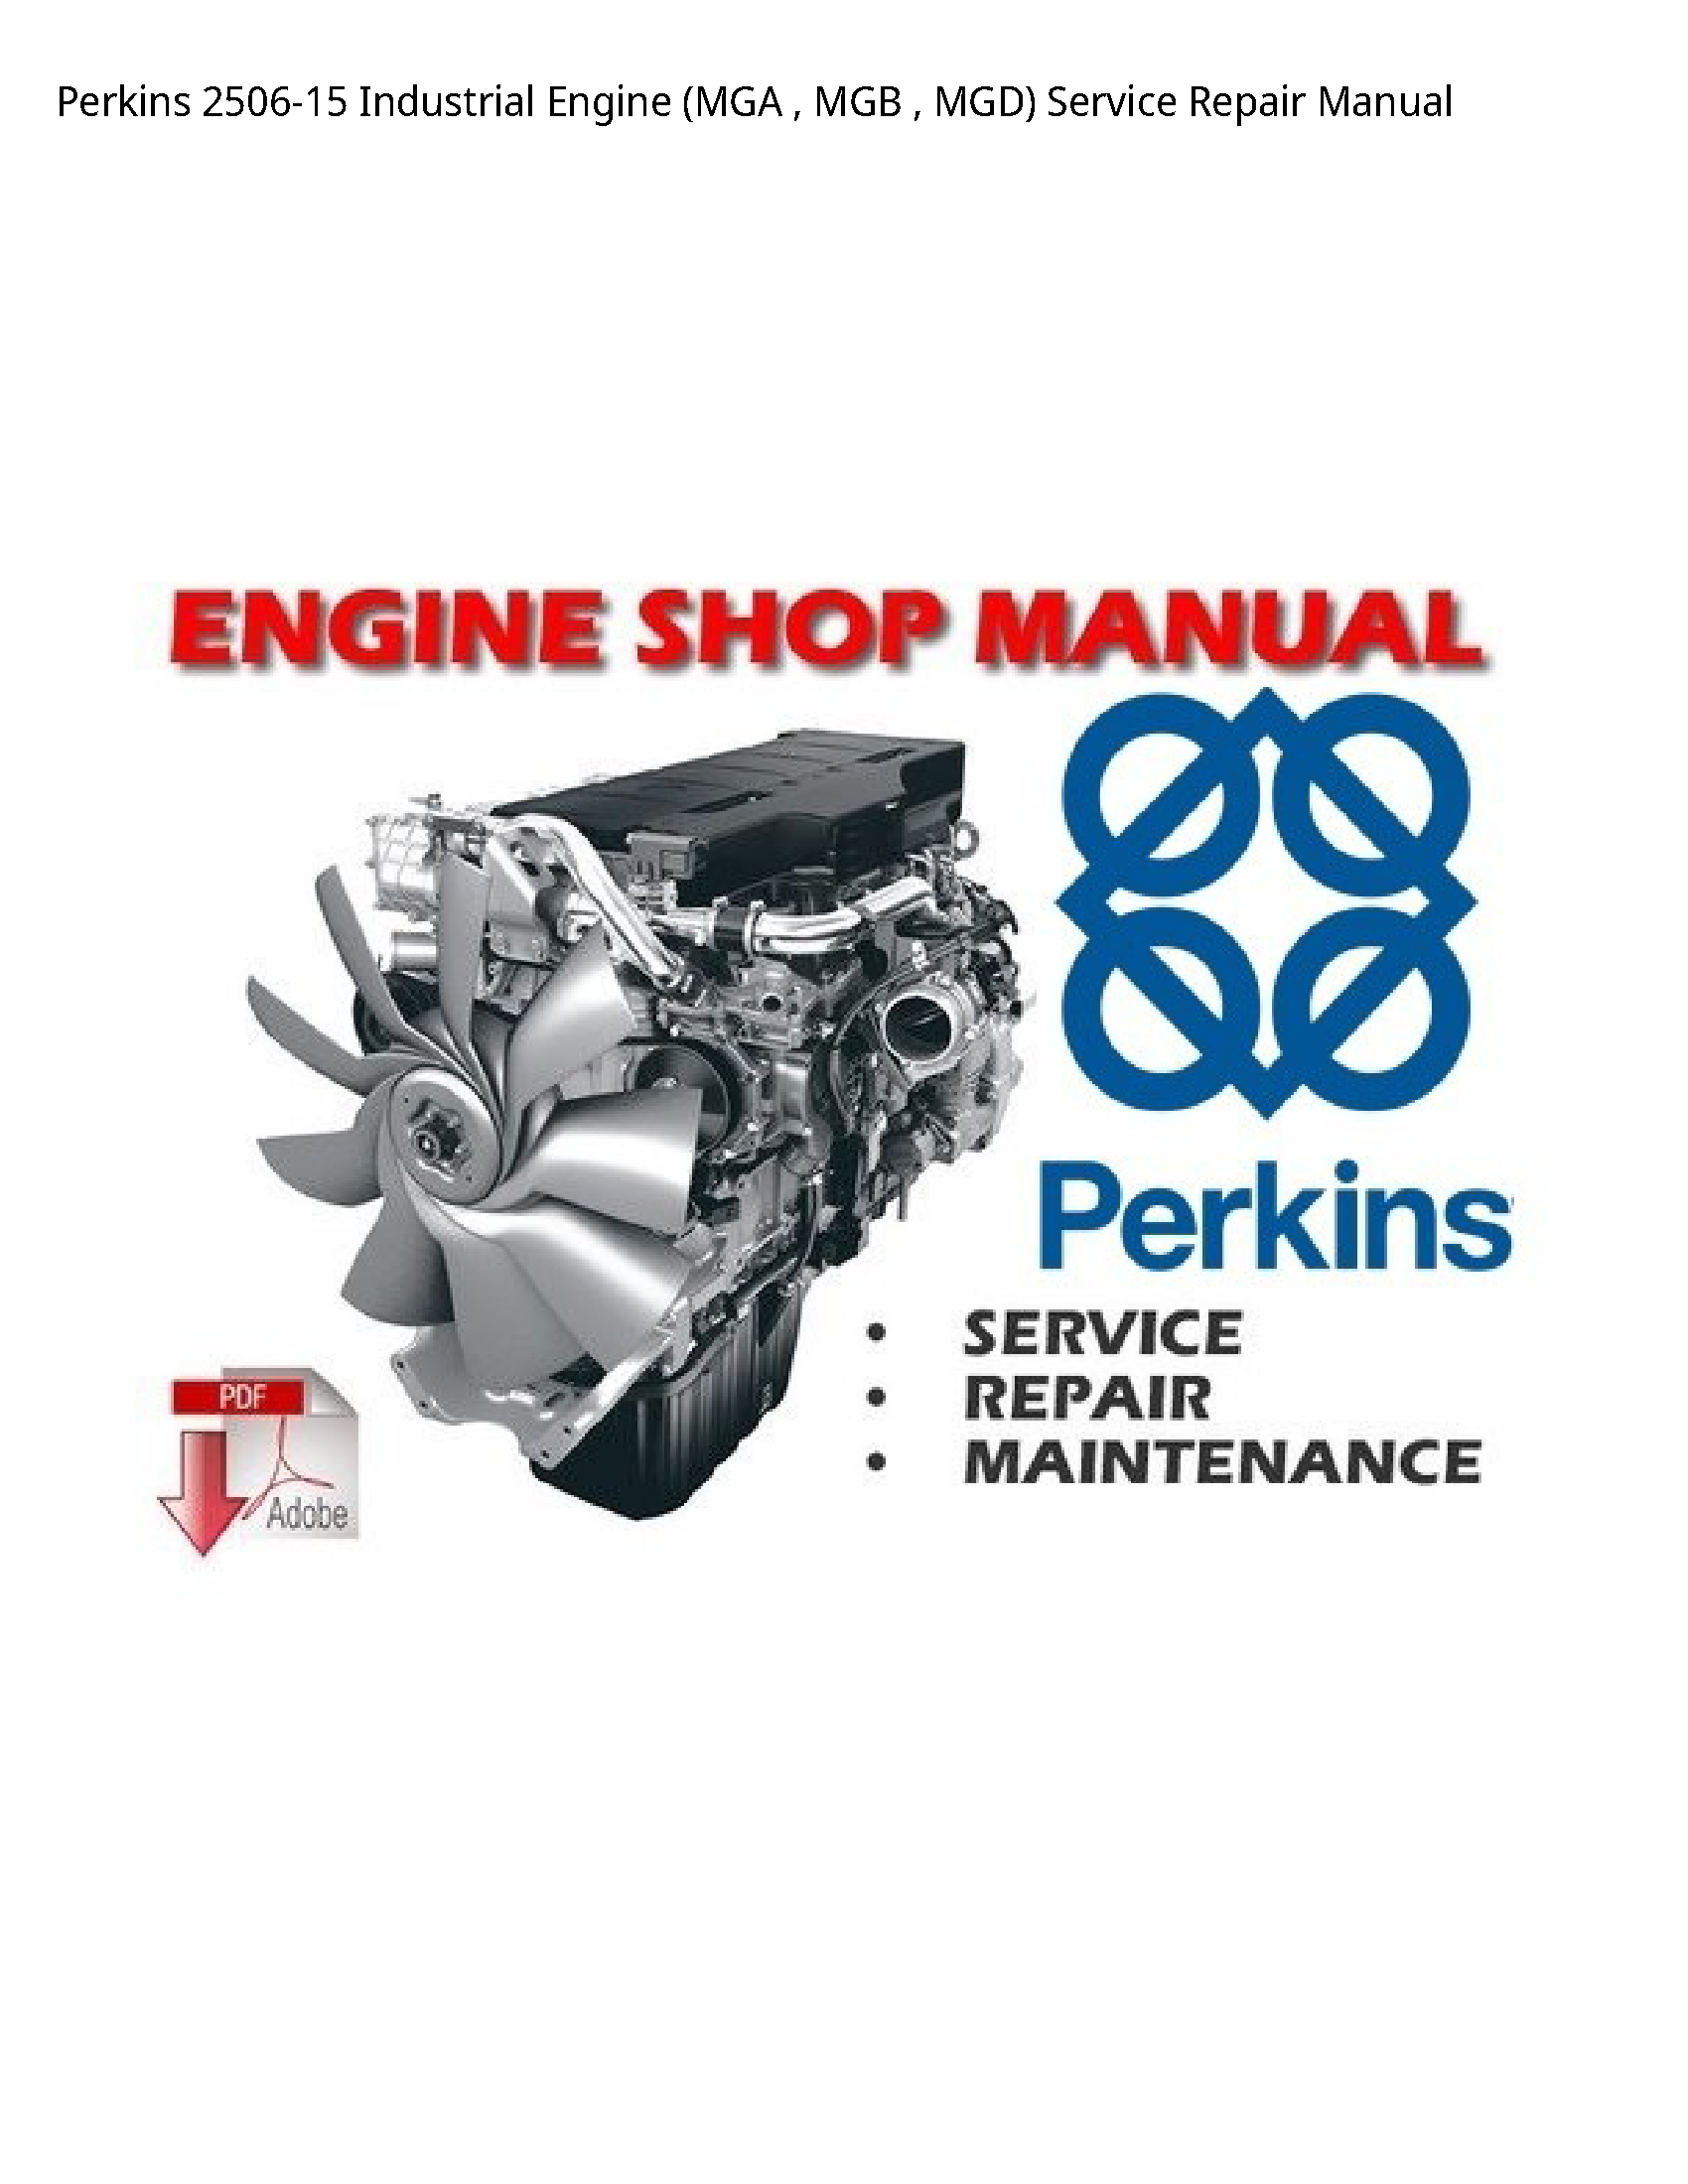 Perkins 2506-15 Industrial Engine (MGA MGB MGD) manual